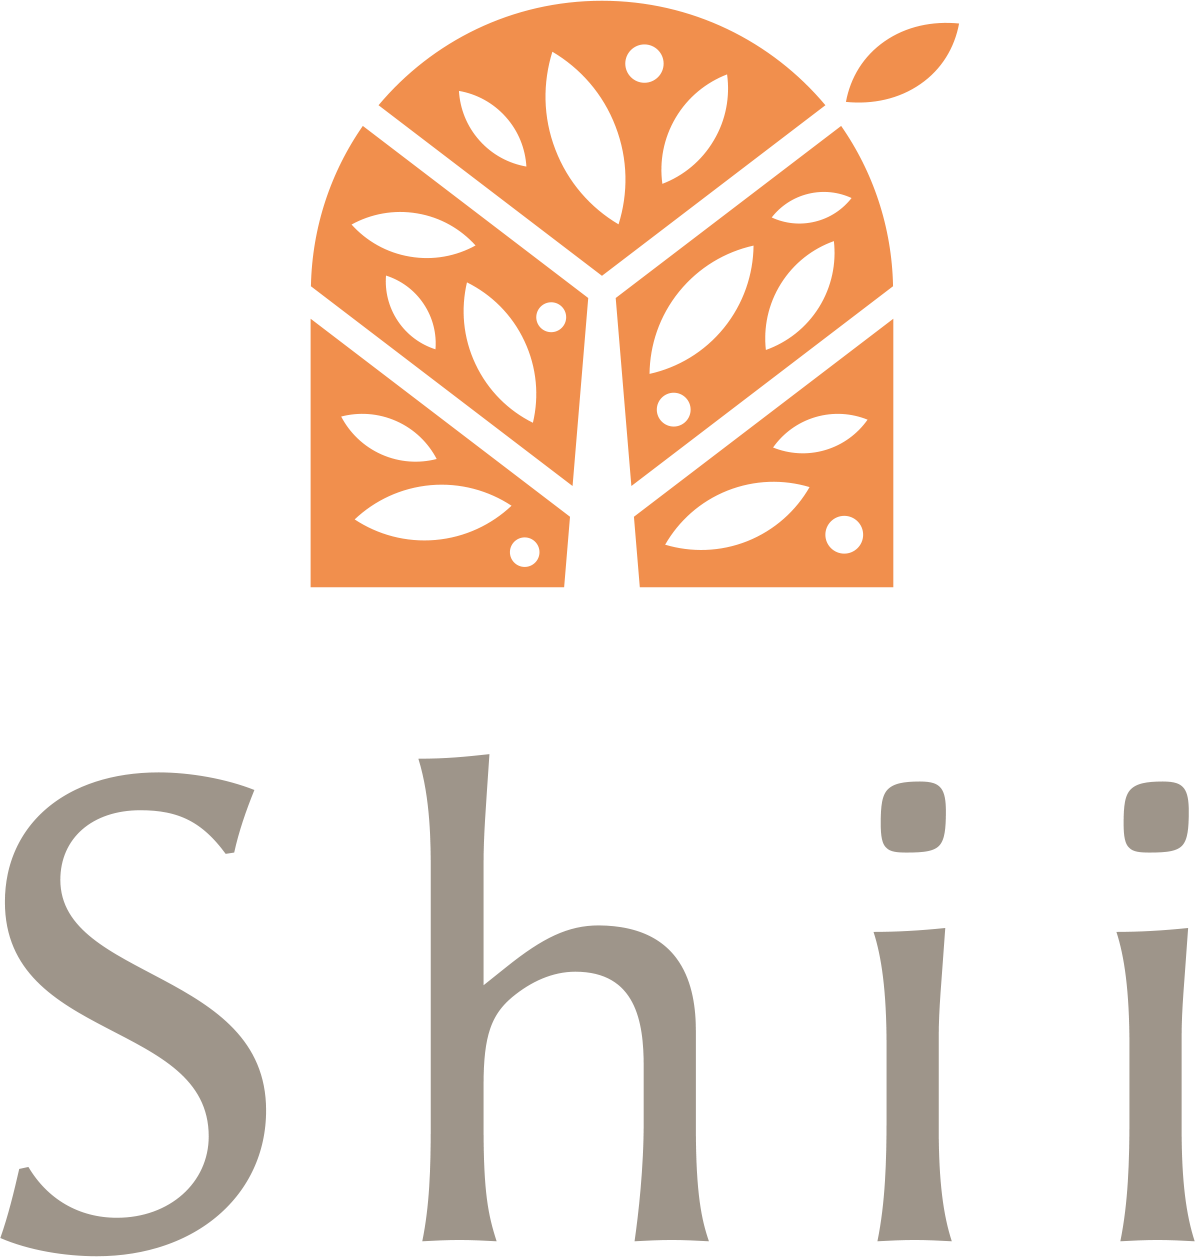 Shii